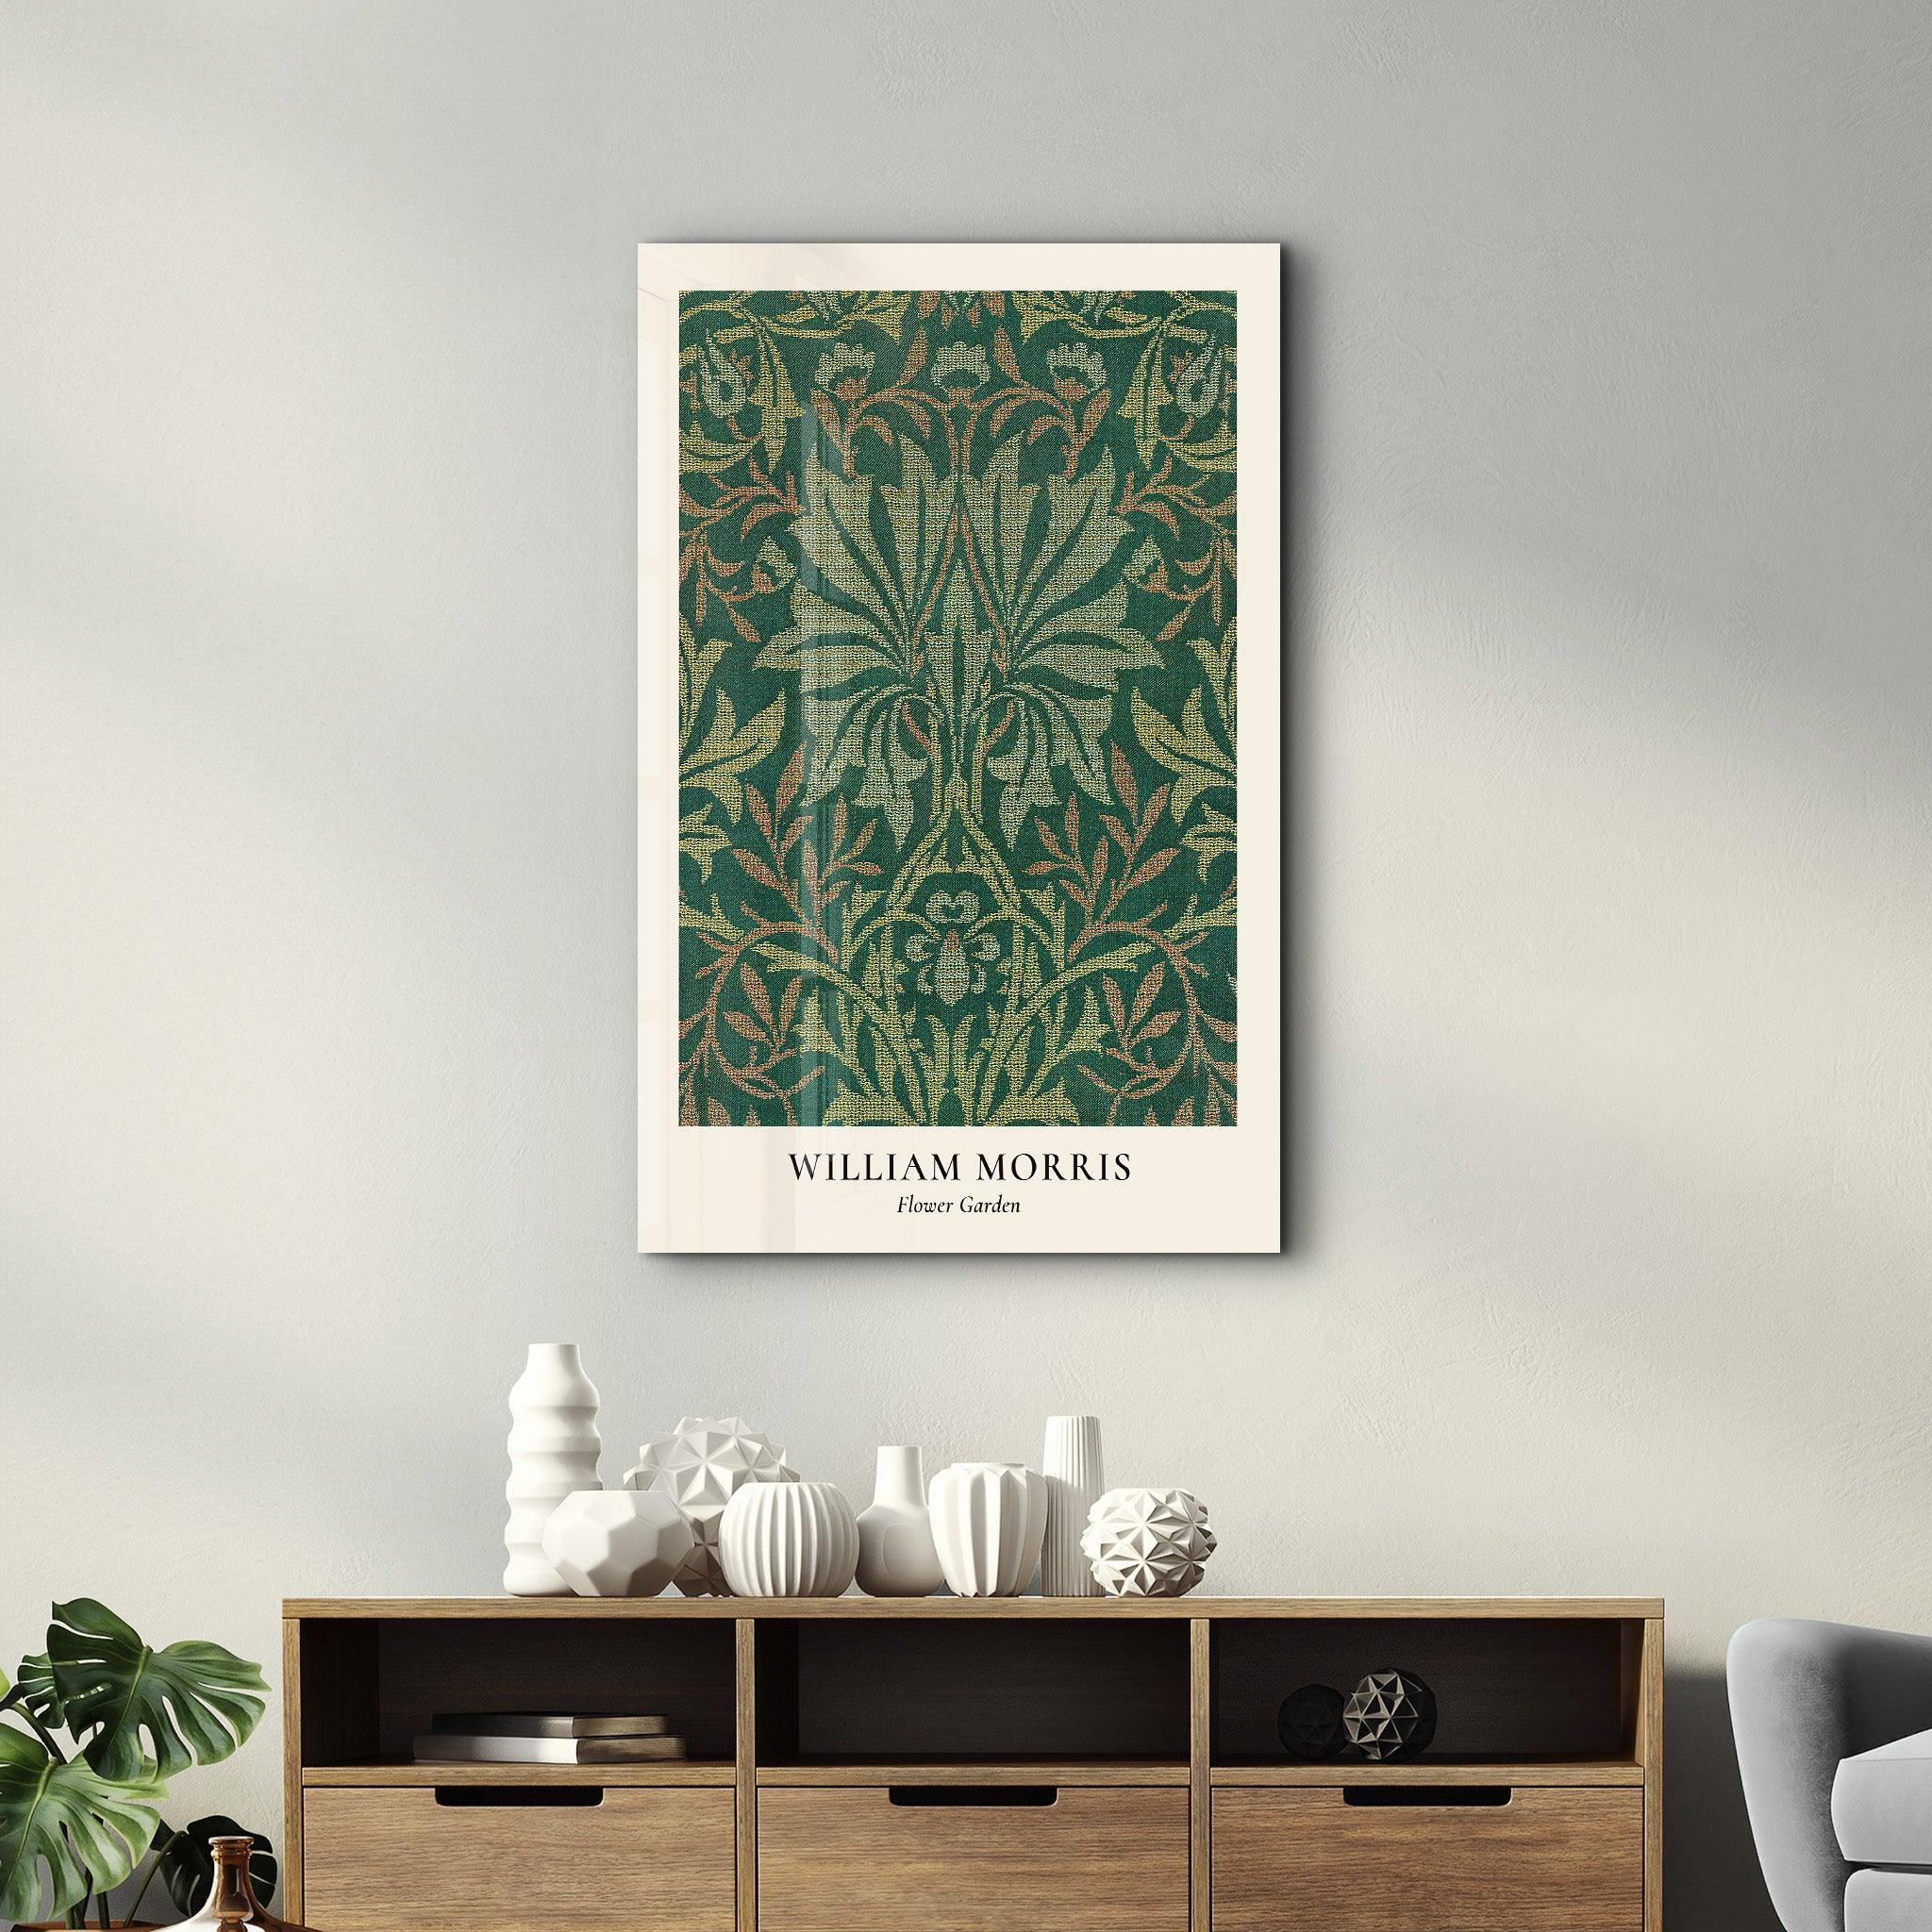 William Morris - Flower Garden | Gallery Print Collection Glass Wall Art - ArtDesigna Glass Printing Wall Art